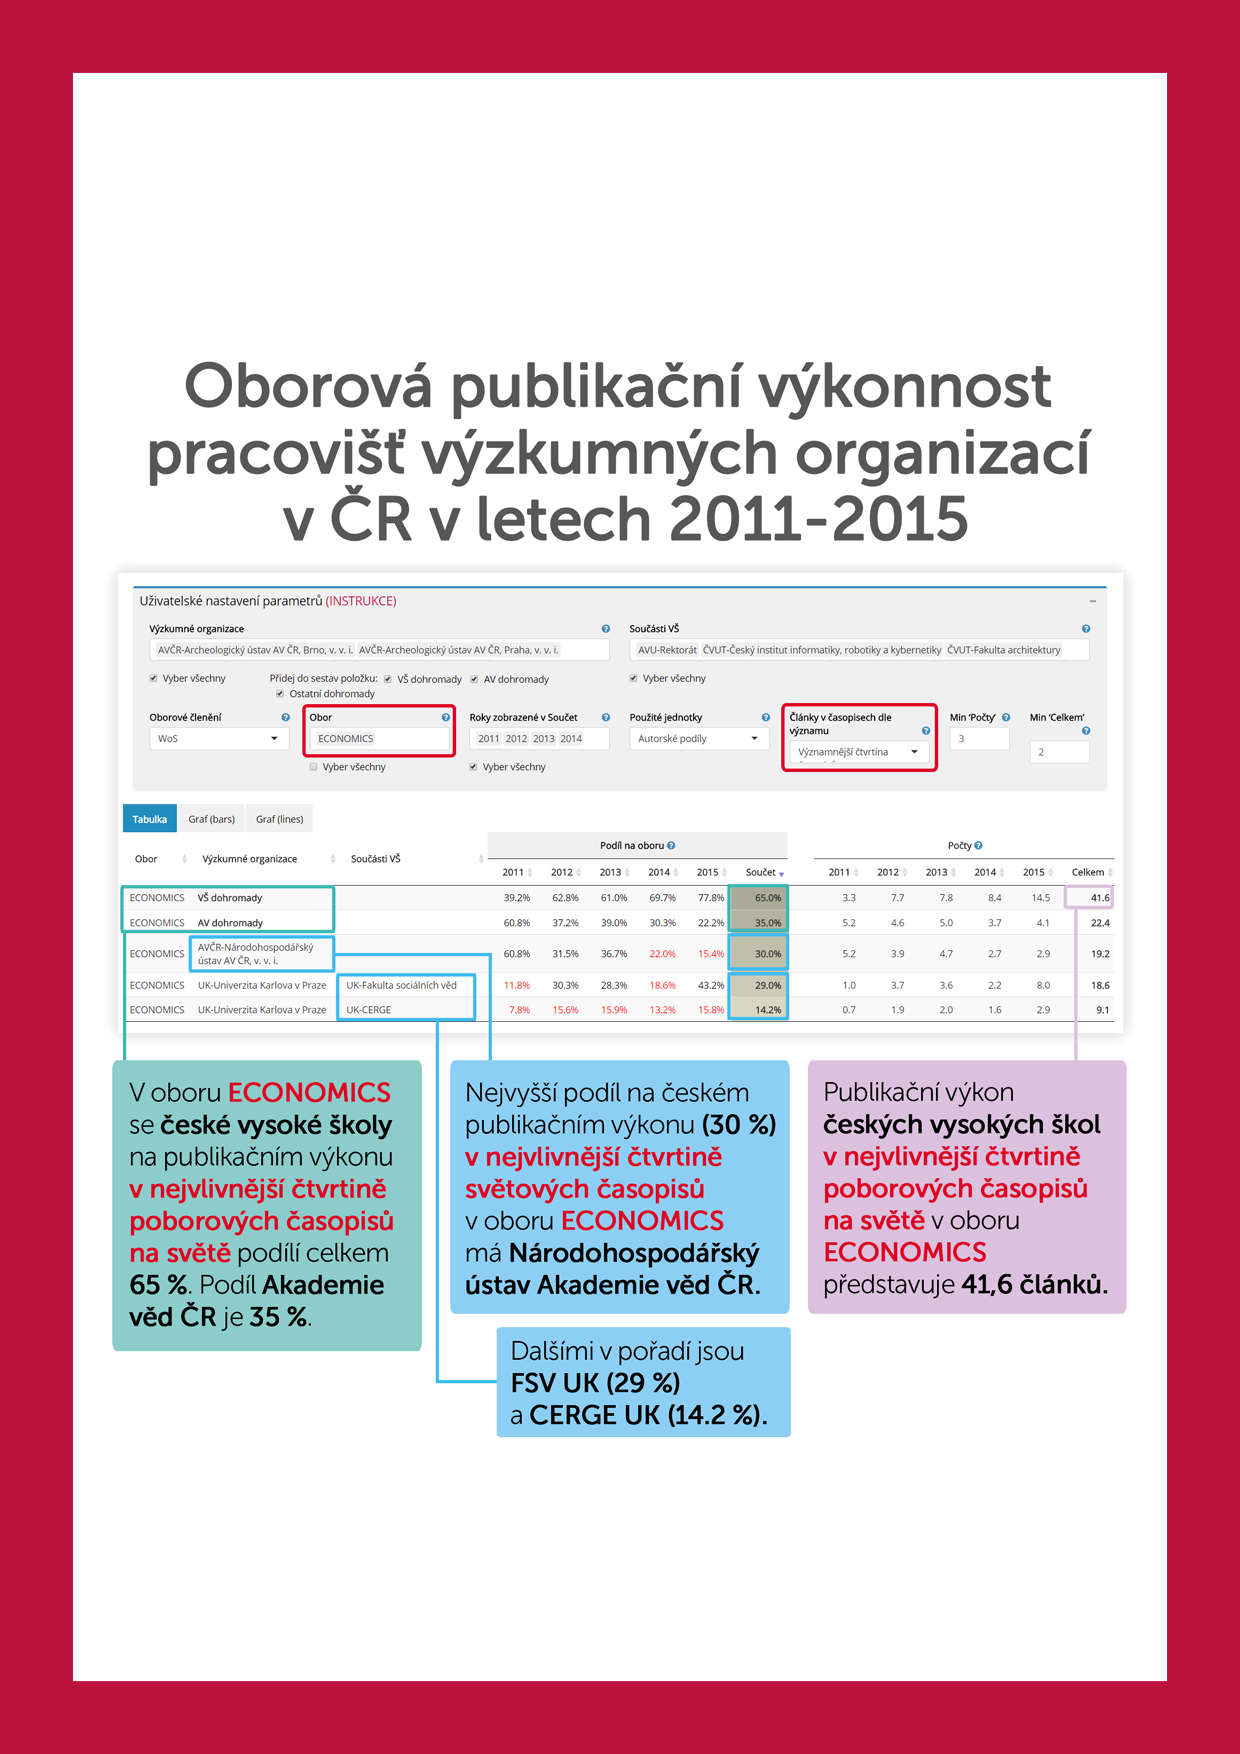 Oborová publikační výkonnost pracovišť výzkumných organizací v České republice v letech 2011-2015